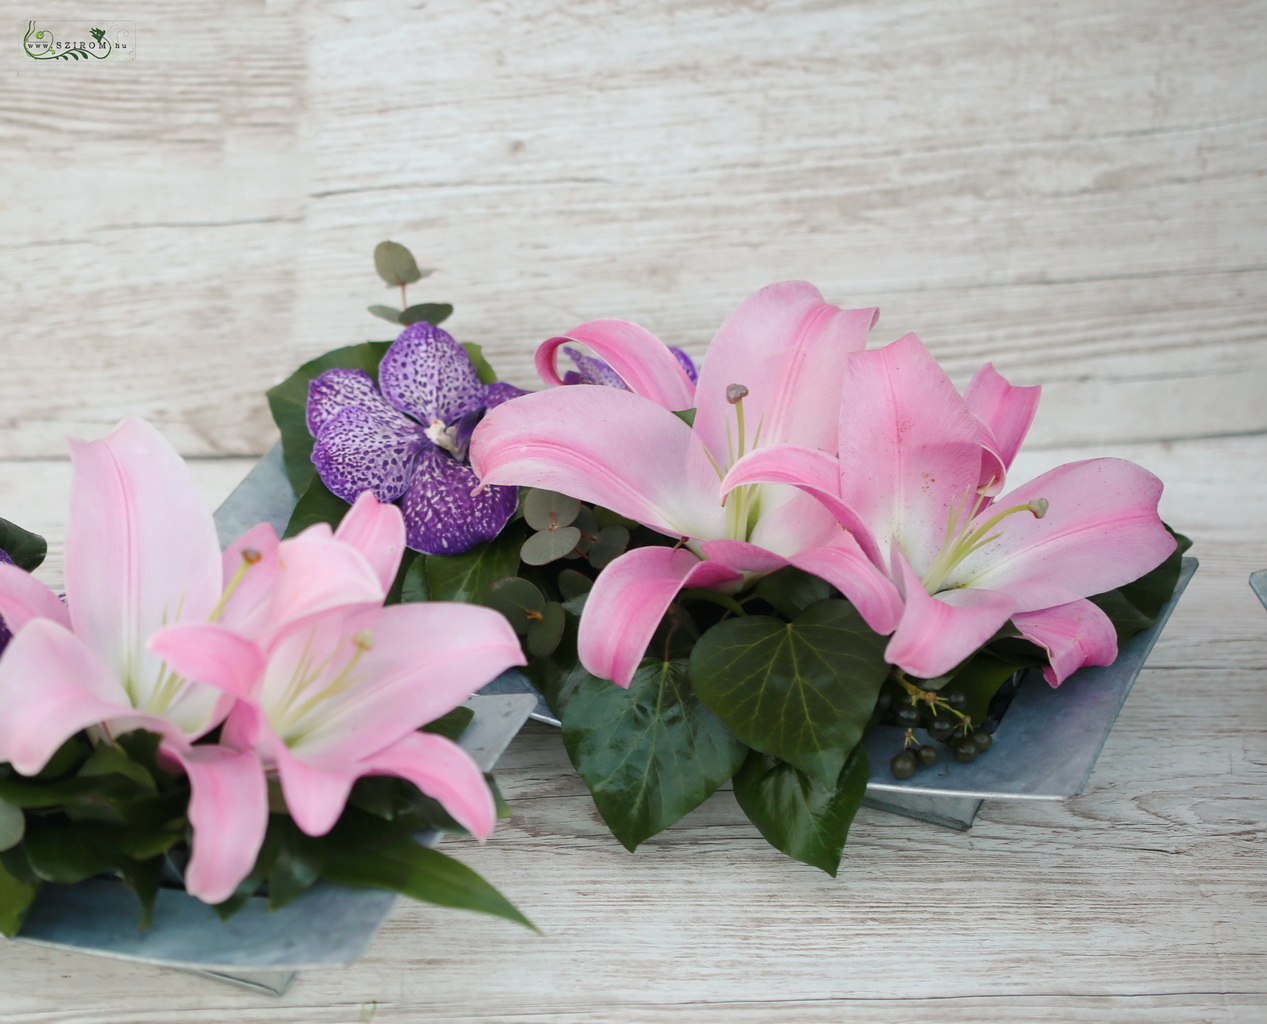 Virágküldés Budapest - Asztaldísz fém tálban, rózsaszín liliommal, lila vanda orchideával